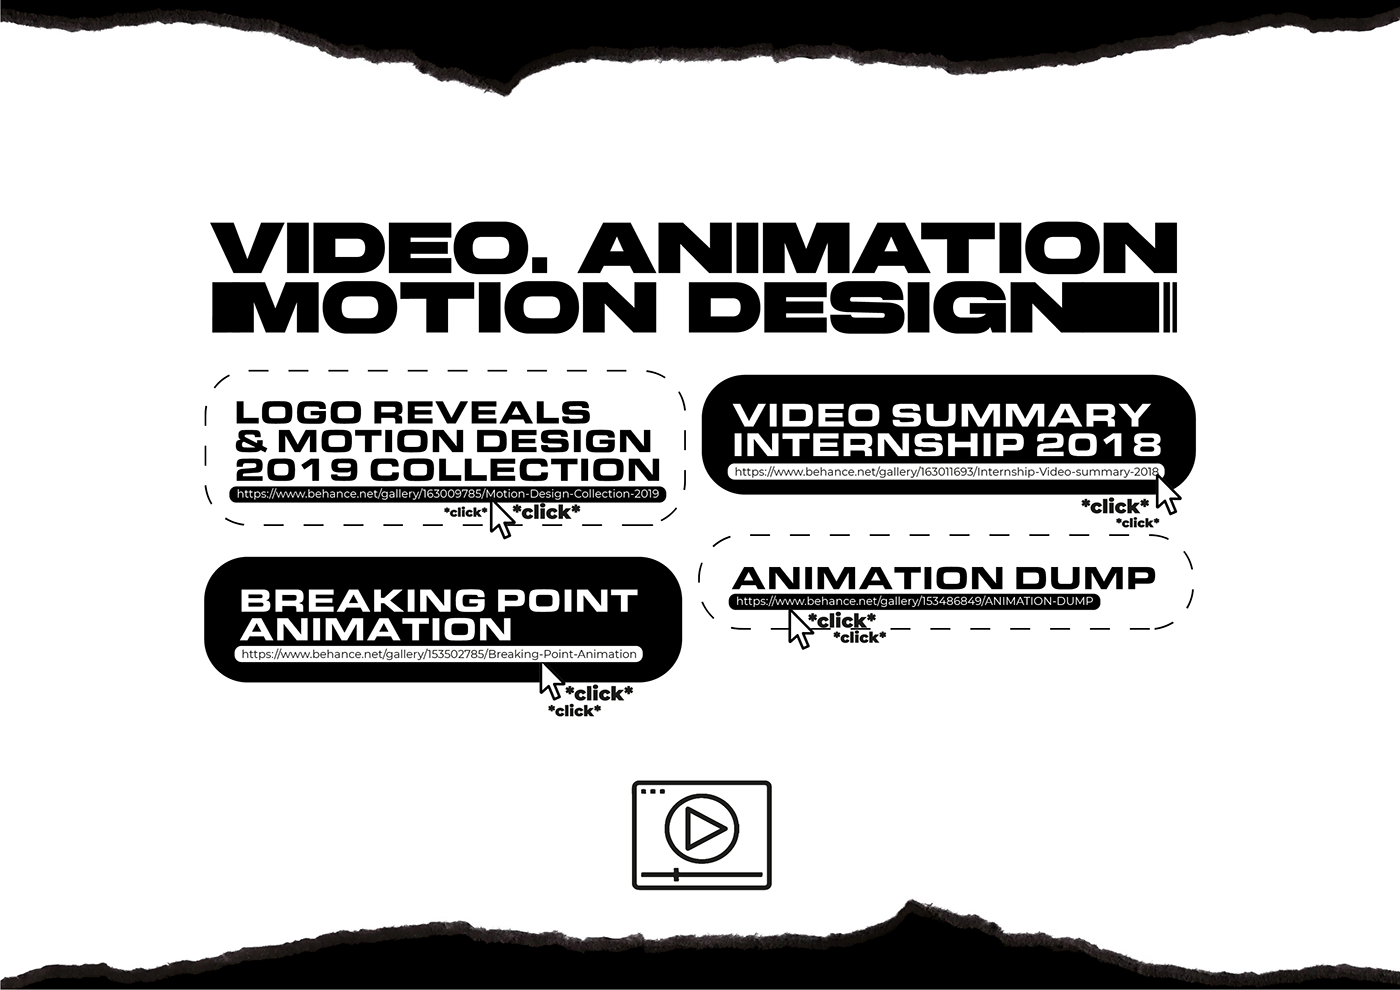 CV cv design designer graphic design  graphic design portfolio Graphic Designer illustration design illustration portfolio portfolio Resume